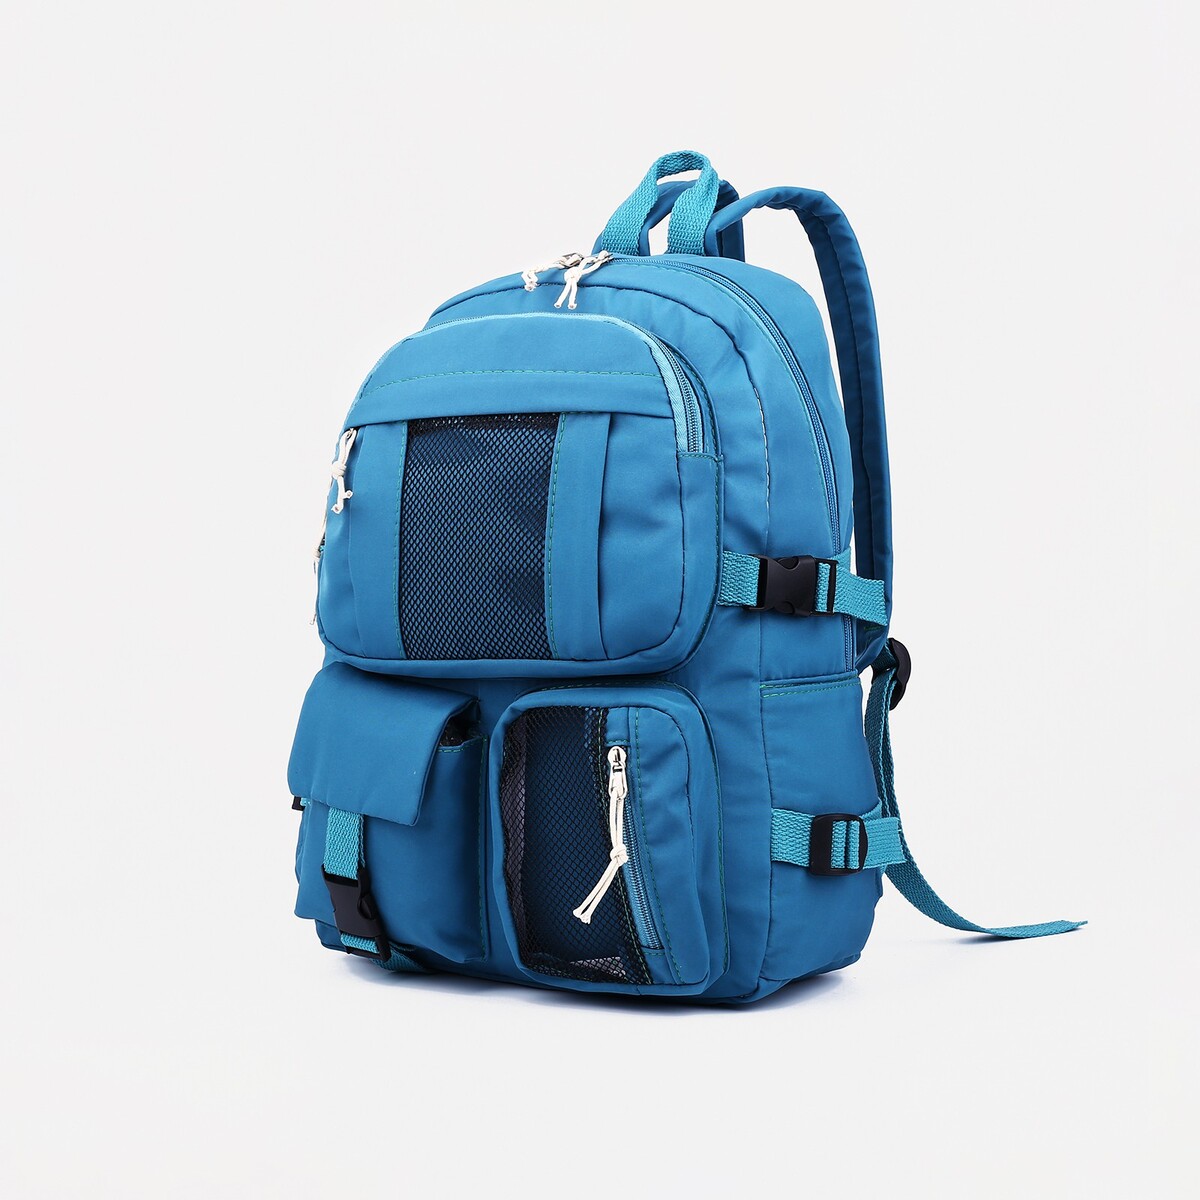 Рюкзак школьный на молнии, 5 наружных карманов, цвет синий рюкзак на молнии 5 наружных карманов пенал синий